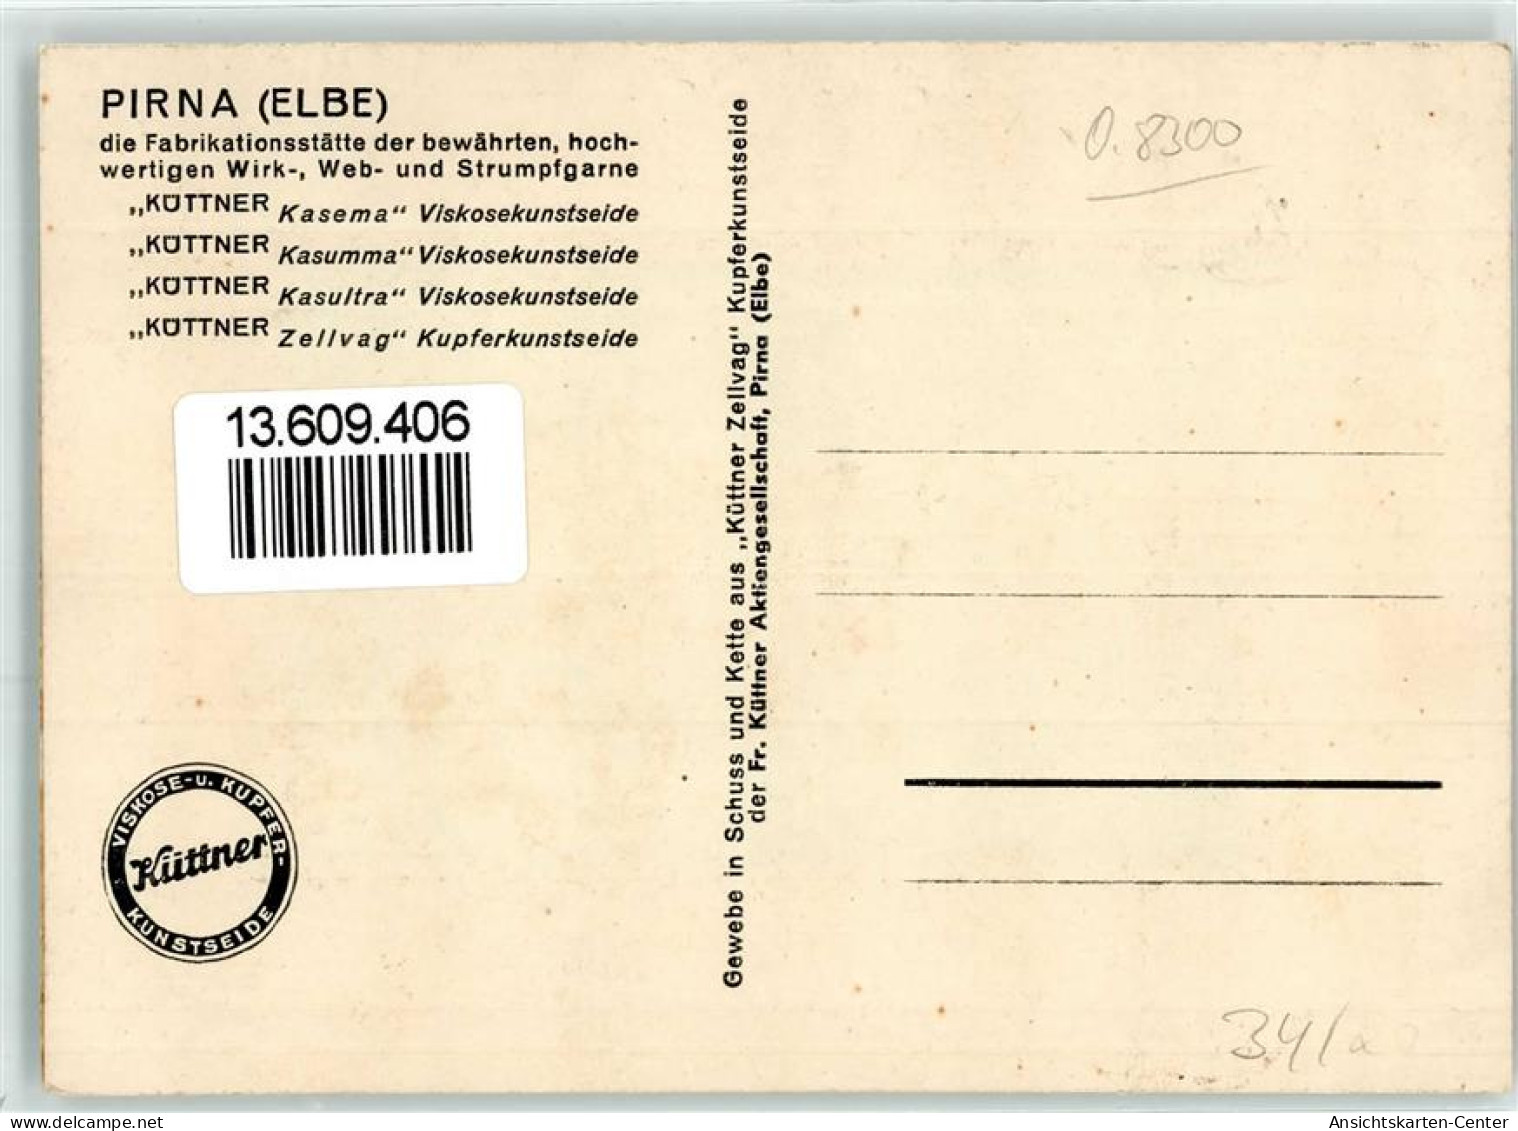 13609406 - Pirna - Pirna